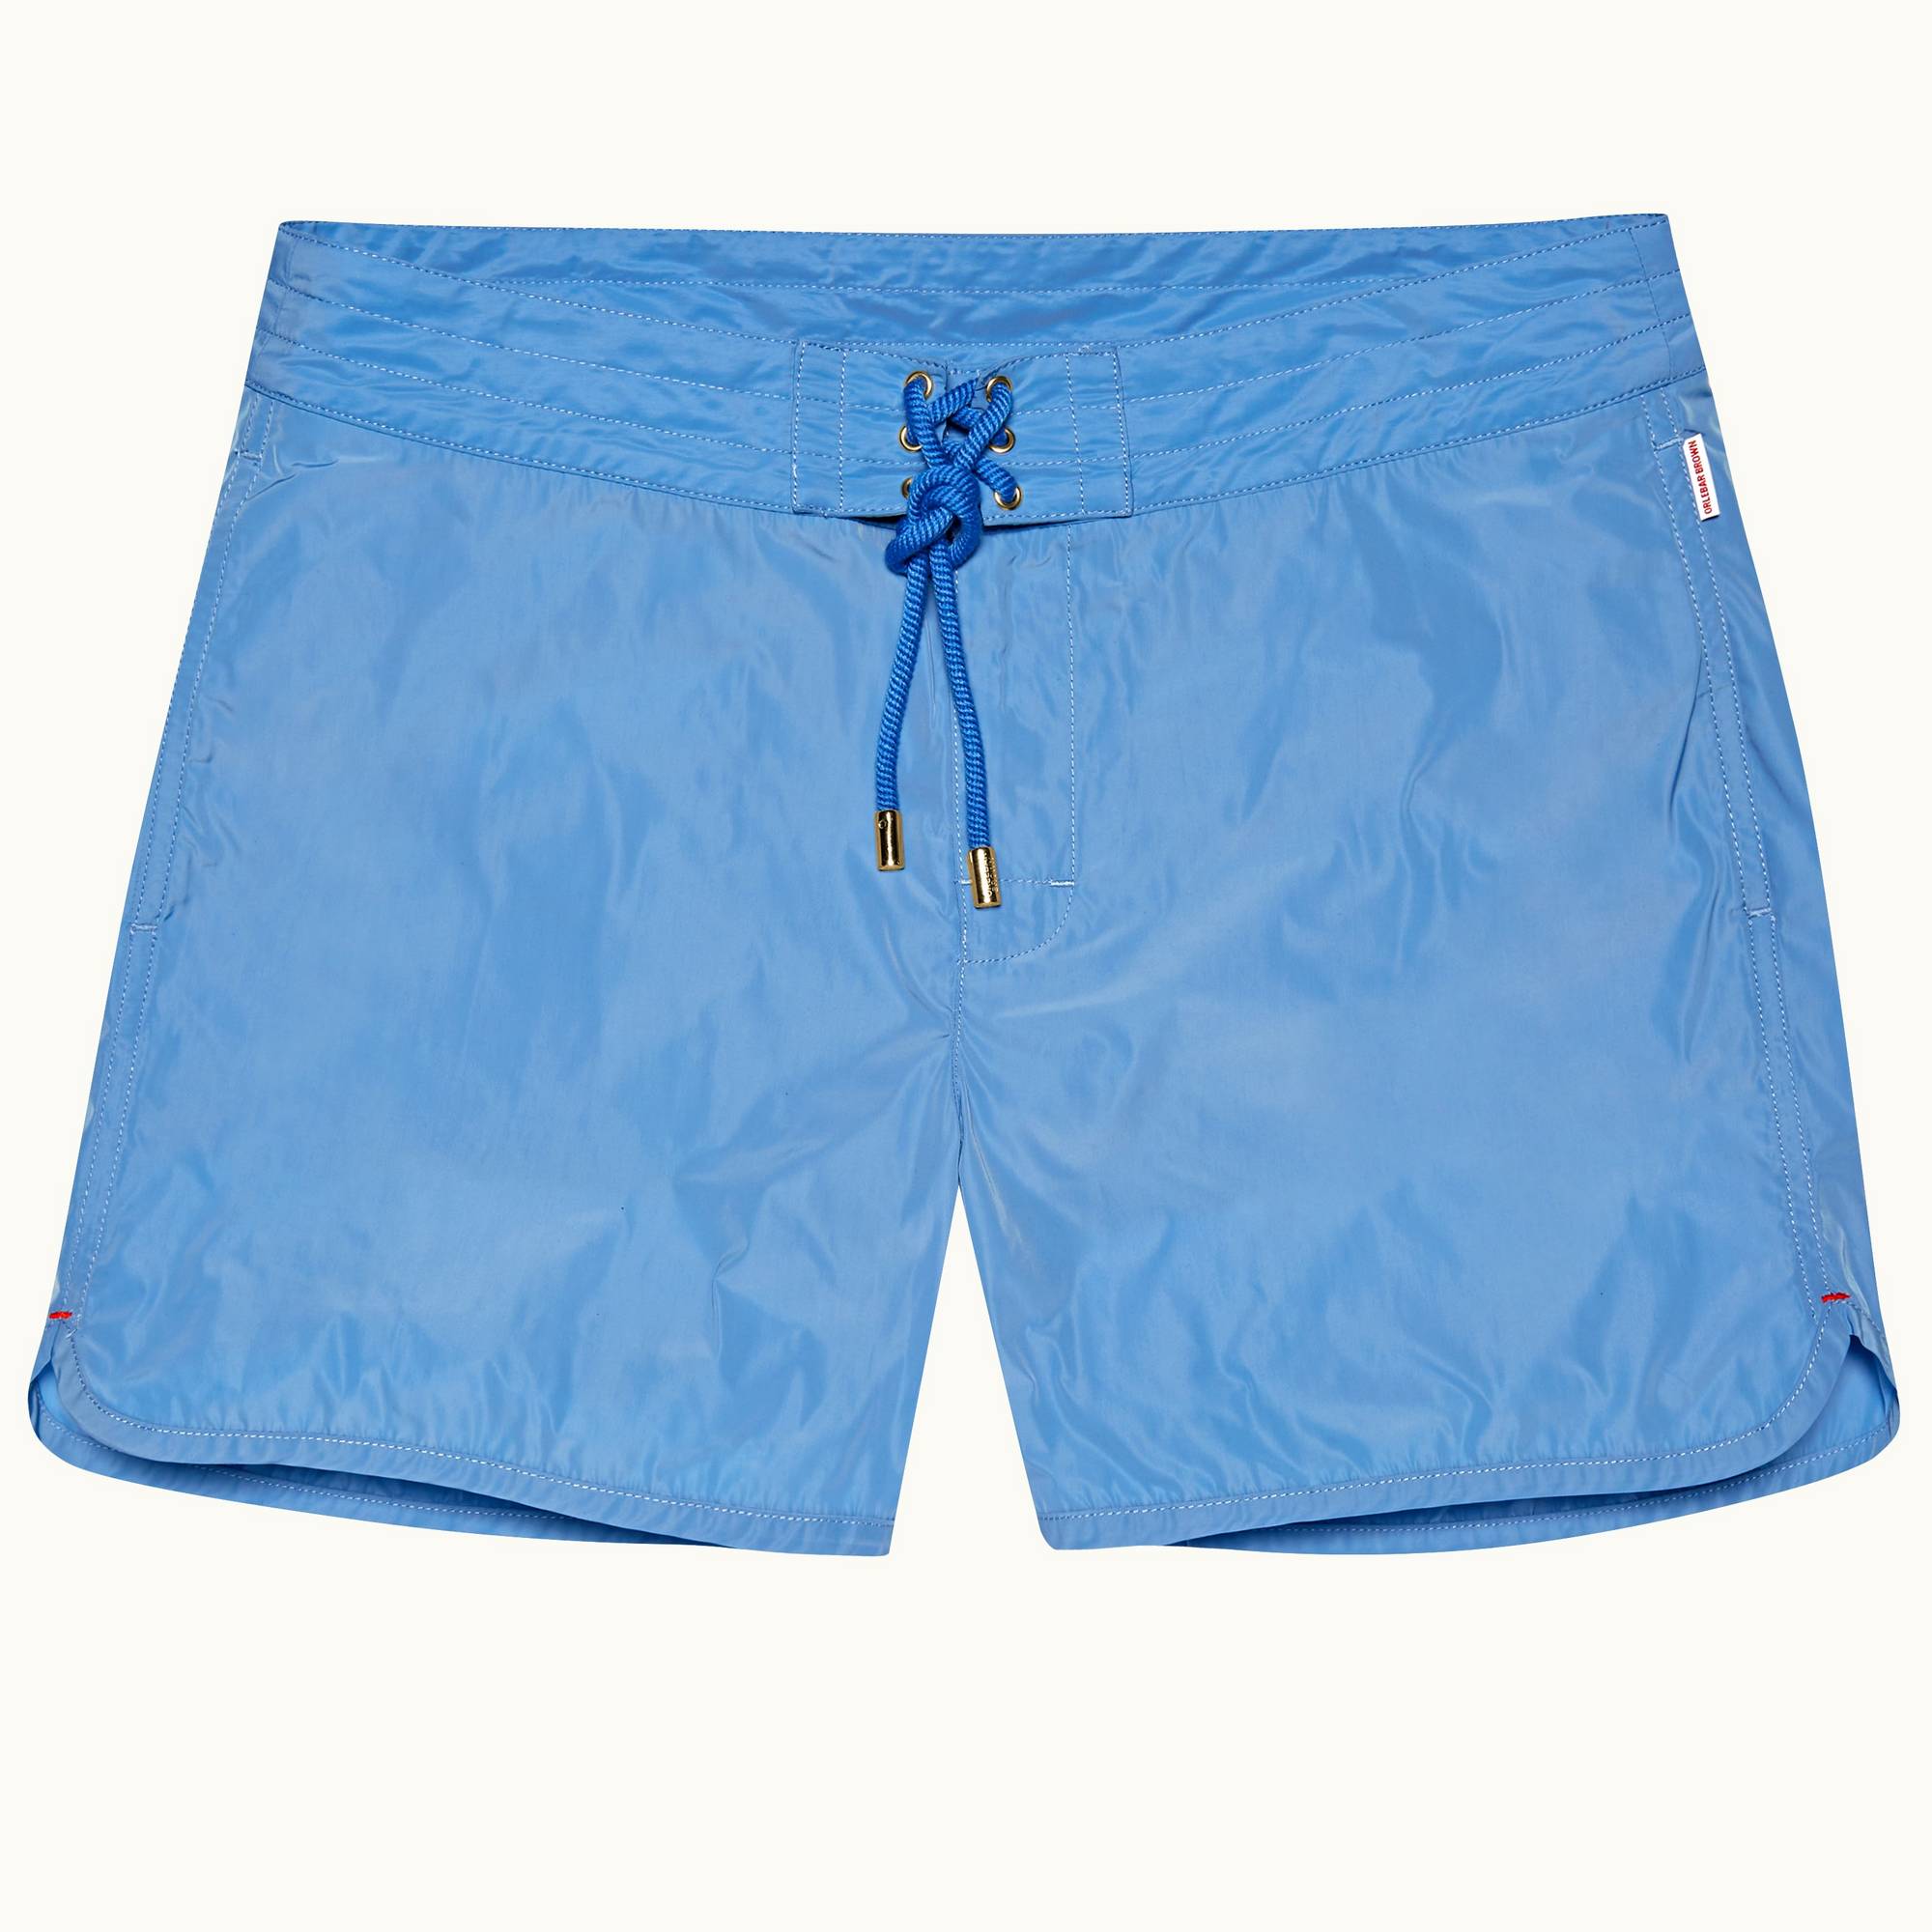 Setter Binding - Mens Mirage Blue Shorter-Length Board Swim Shorts